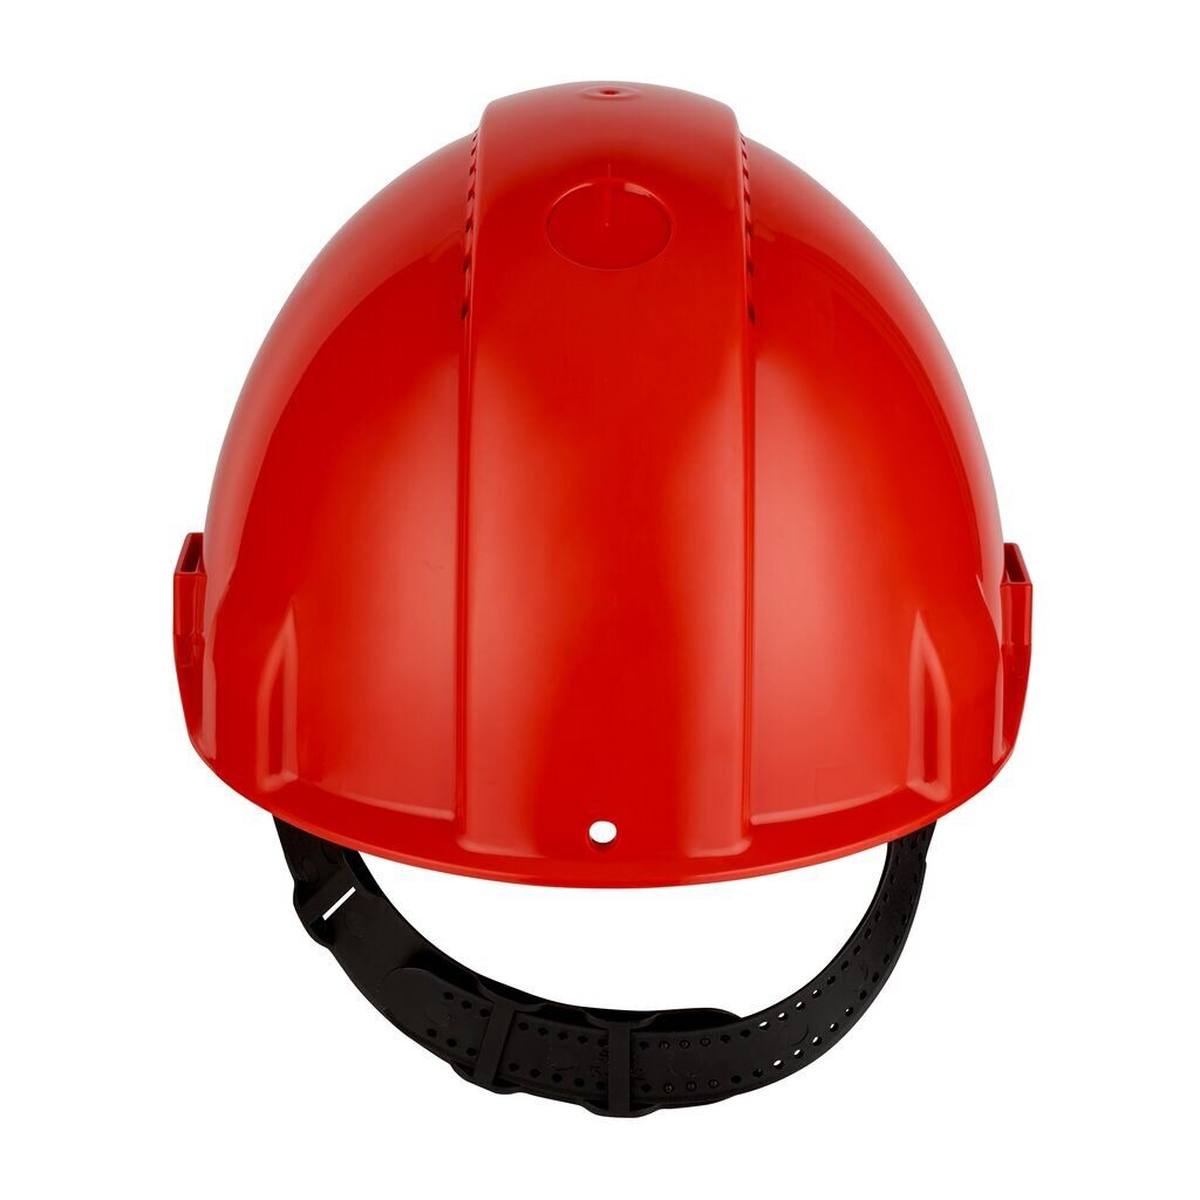 Elmetto di sicurezza 3M G3000 G30CUR in rosso, ventilato, con uvicatore, pinlock e fascia antisudore in plastica